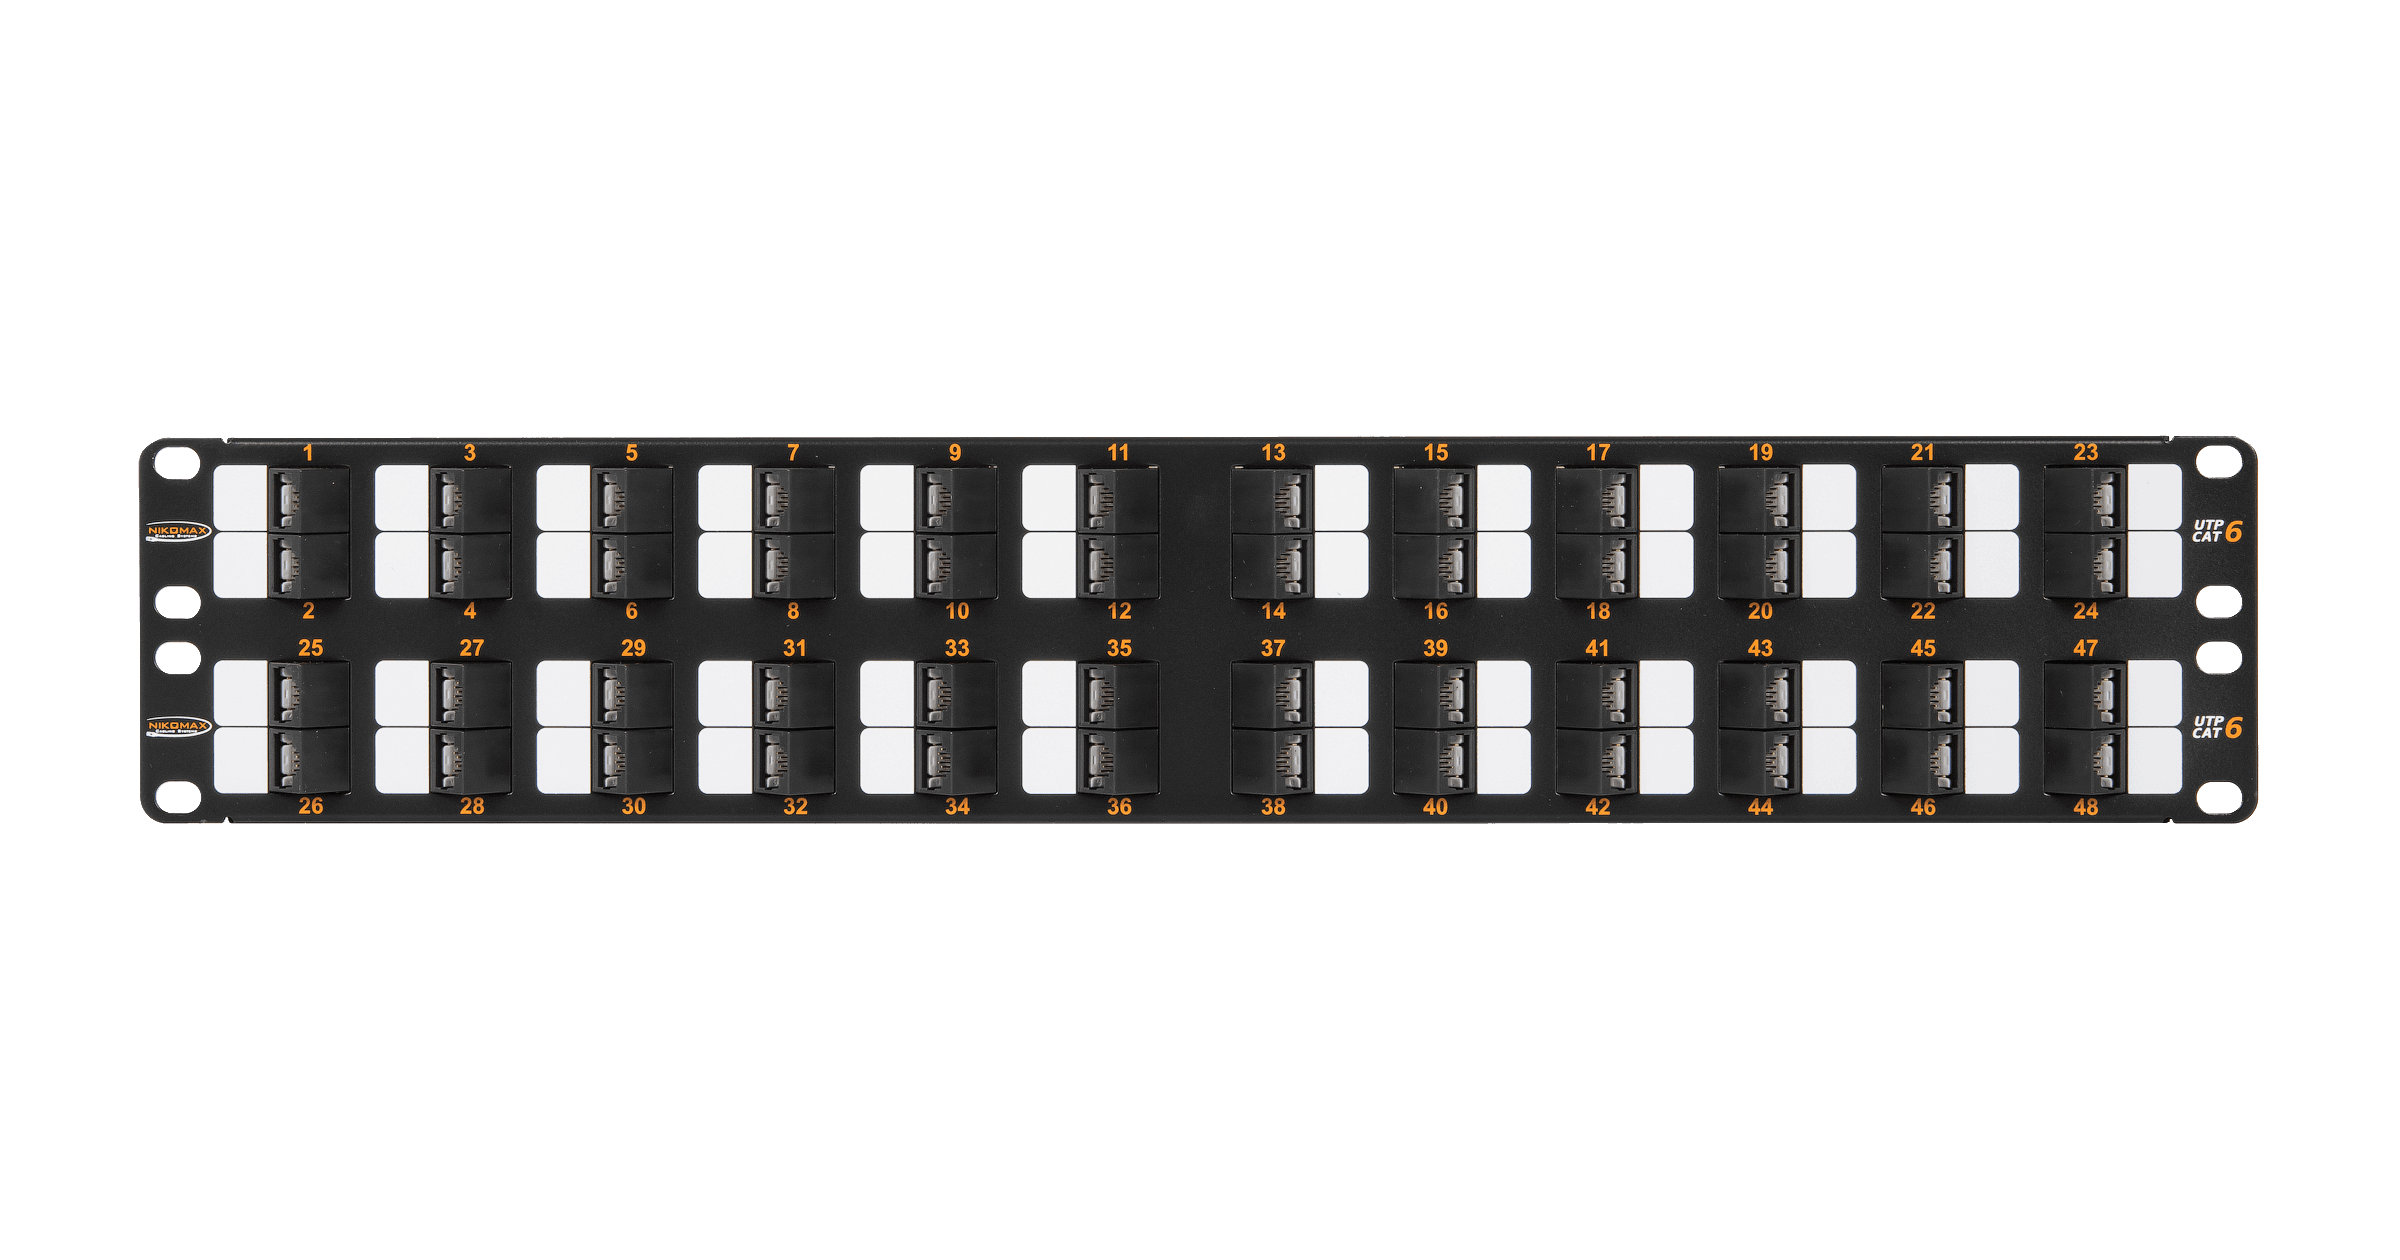 Коммутационная панель NIKOMAX 19", 2U, 48 угловых портов, Кат.6 (Класс E), 250МГц, RJ45/8P8C, 110/KRONE, T568A/B, неэкранированная, с органайзером, черная - гарантия: 5 лет расширенная / 25 лет системная